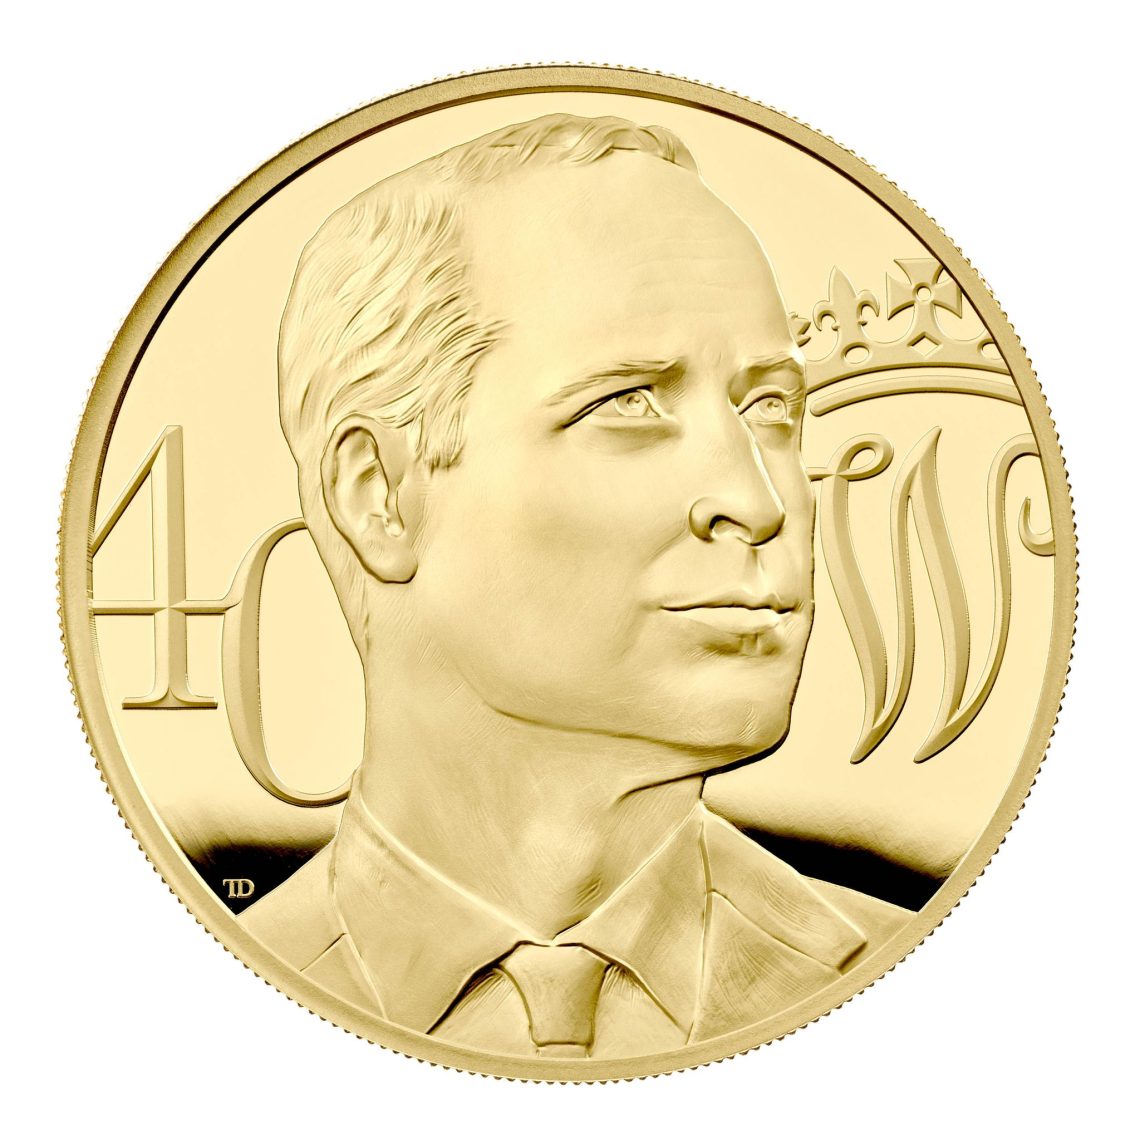 Der britische Prinz William wird zu seinem 40. Geburtstag mit dieser Münze geehrt.